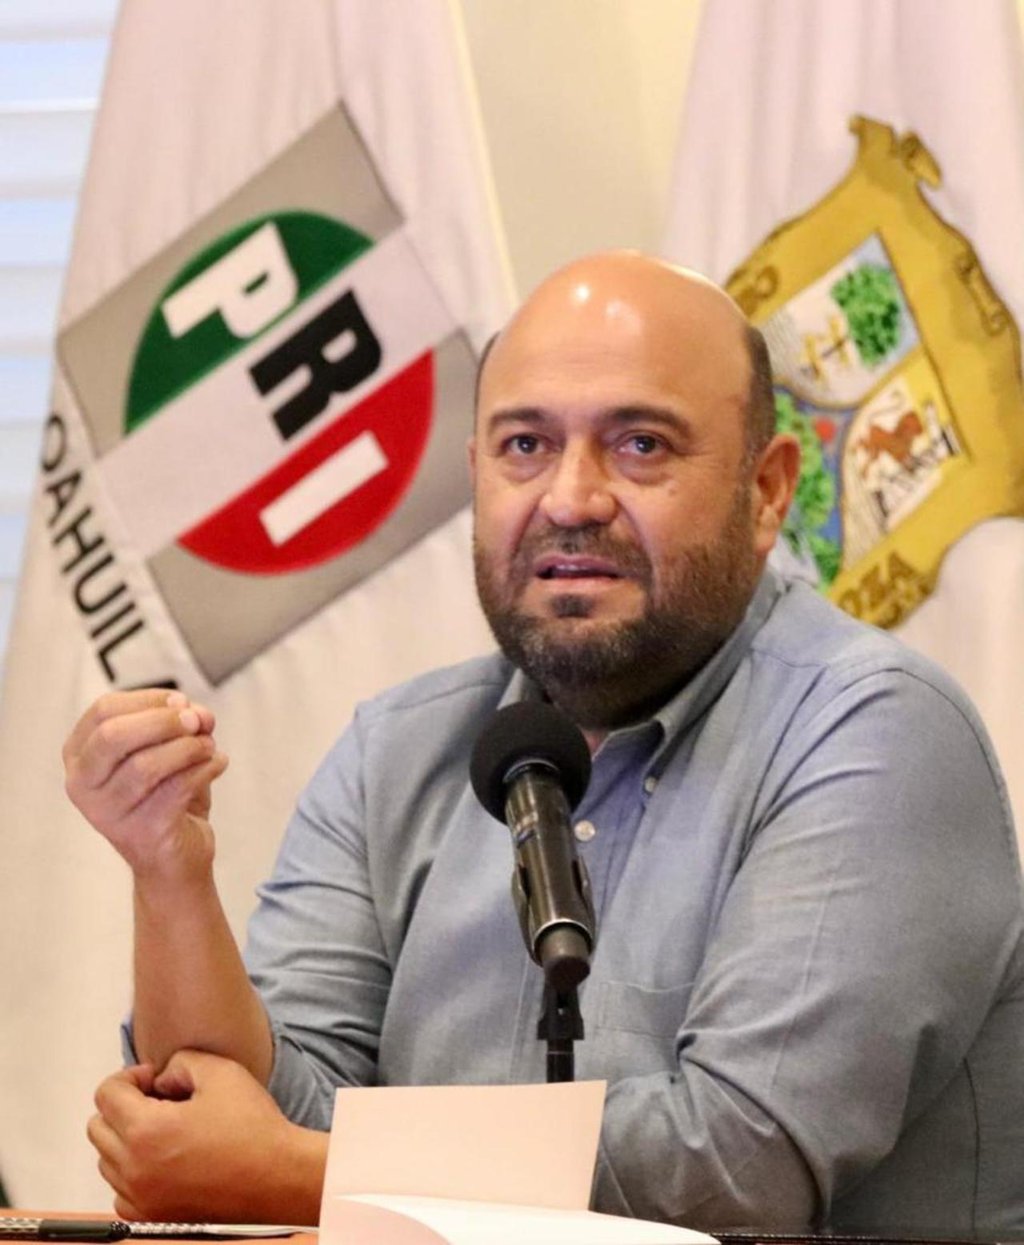 El dirigente del PRI consideró que votación en Consulta de Revociación indica que los mexicanos están concentrados en otros temas.